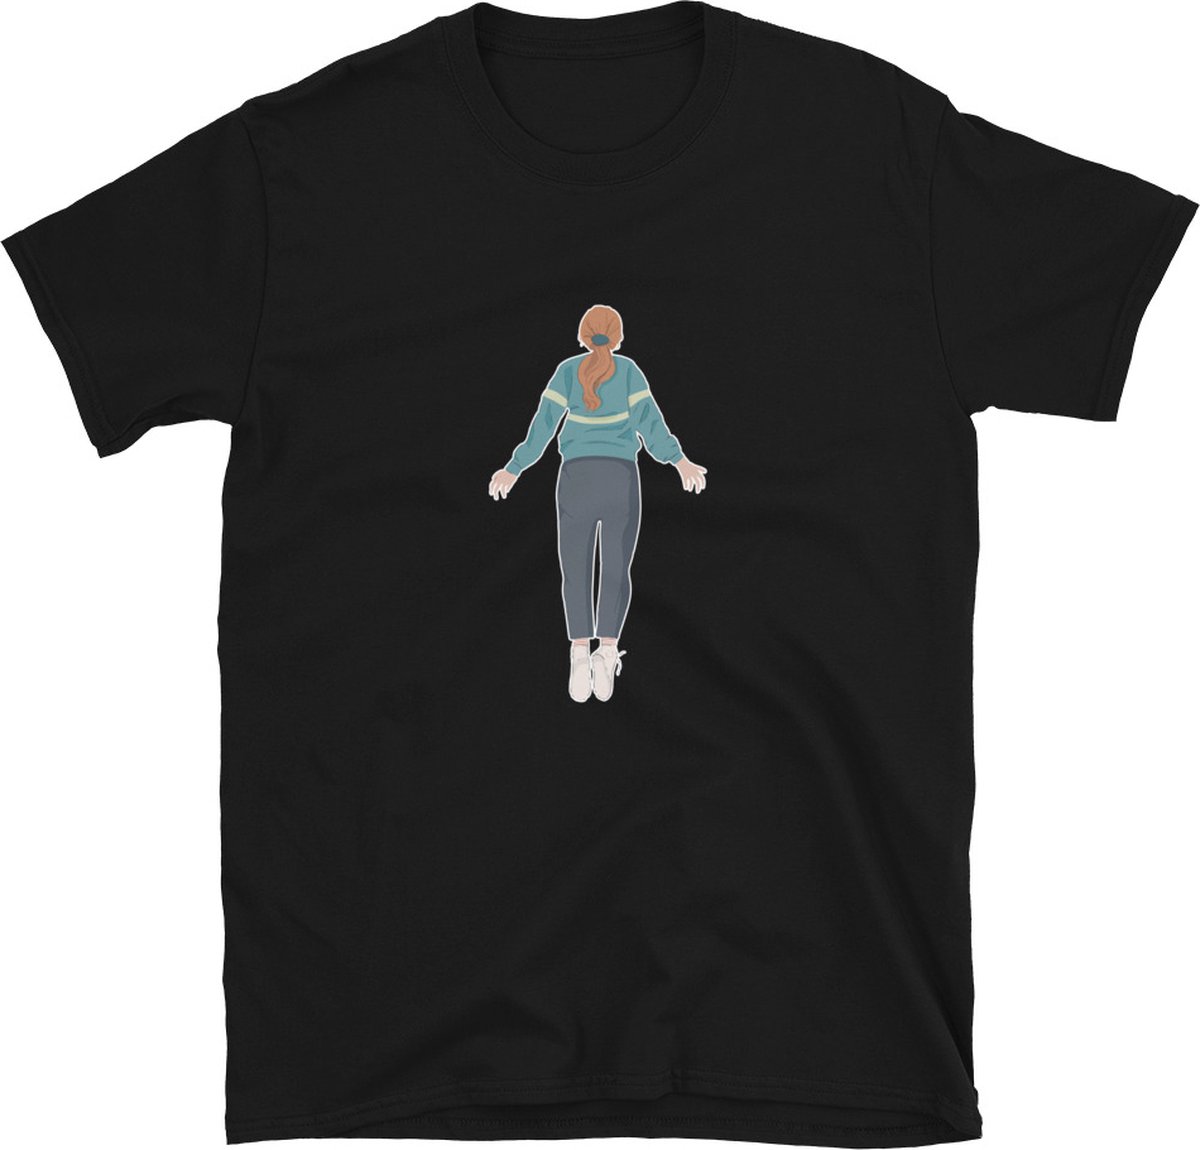 T-shirt Shirt   Stranger Things   Max   Netflix   Serie   Merchandise   Merch   Vliegen   Kleding - Maat M - Zwart - Unisex - Katoen - Polyester - Korte mouwen